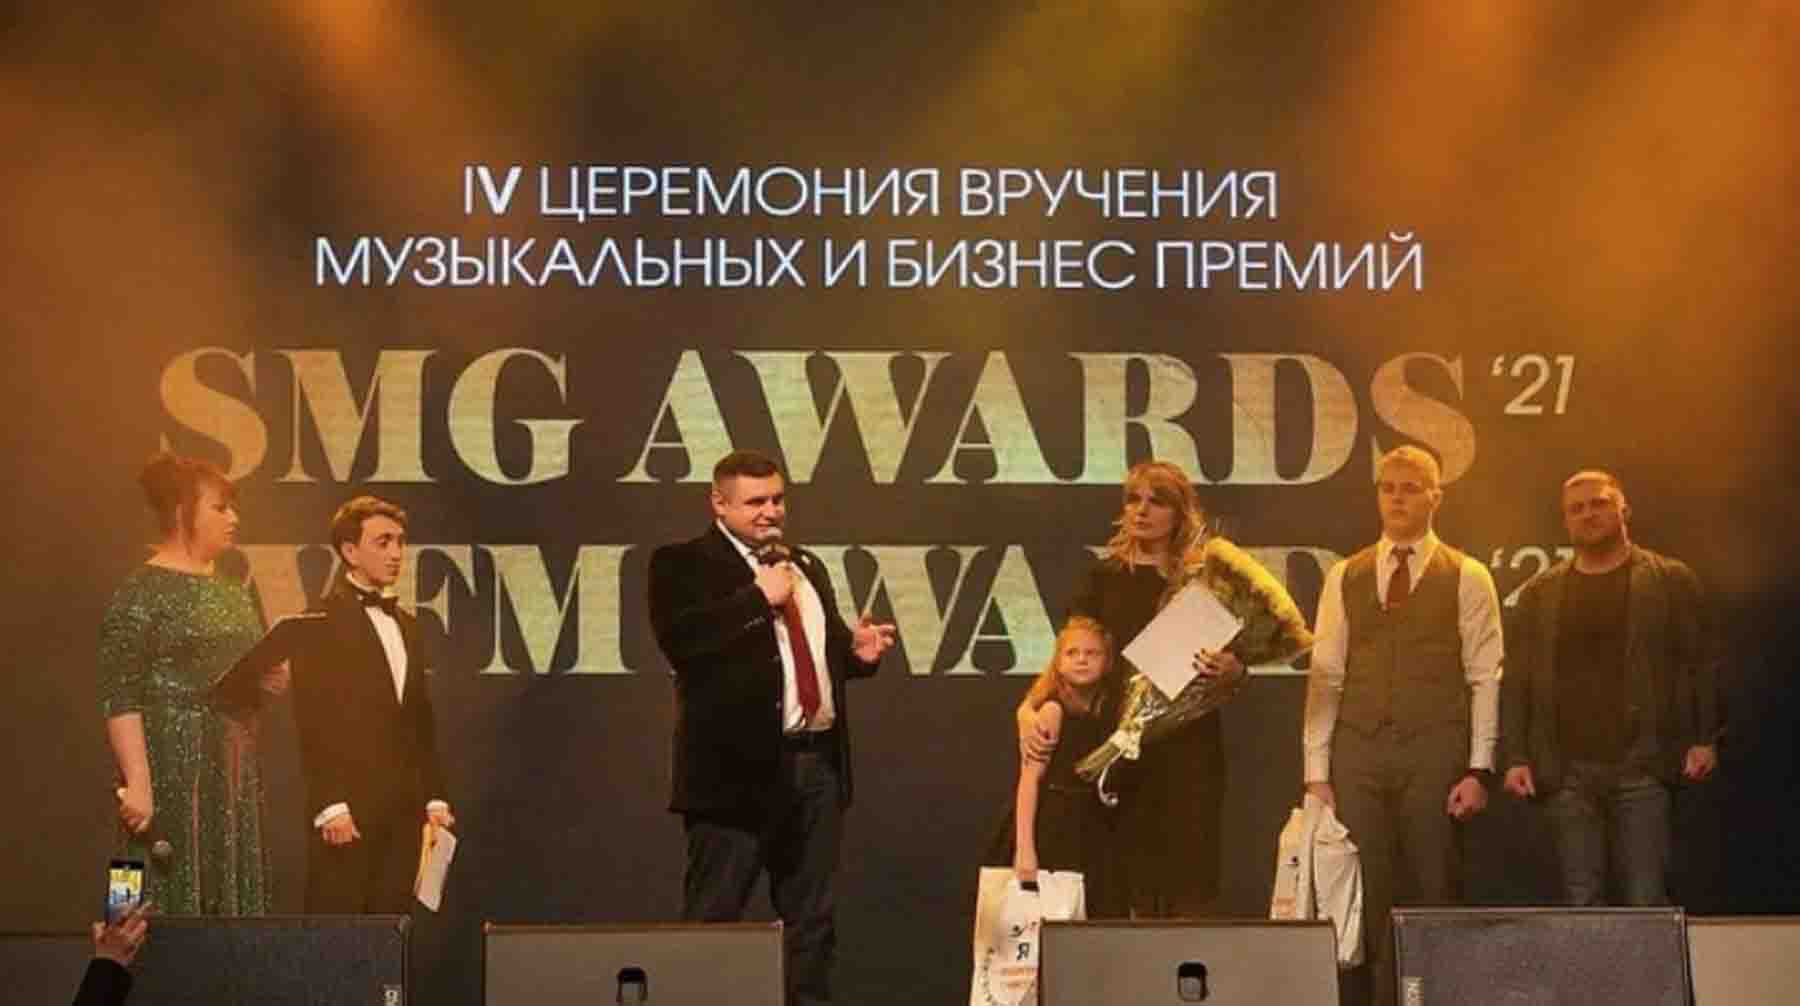 Ежегодная независимая музыкальная и бизнес премия SMG AWARDS & WFM AWARDS